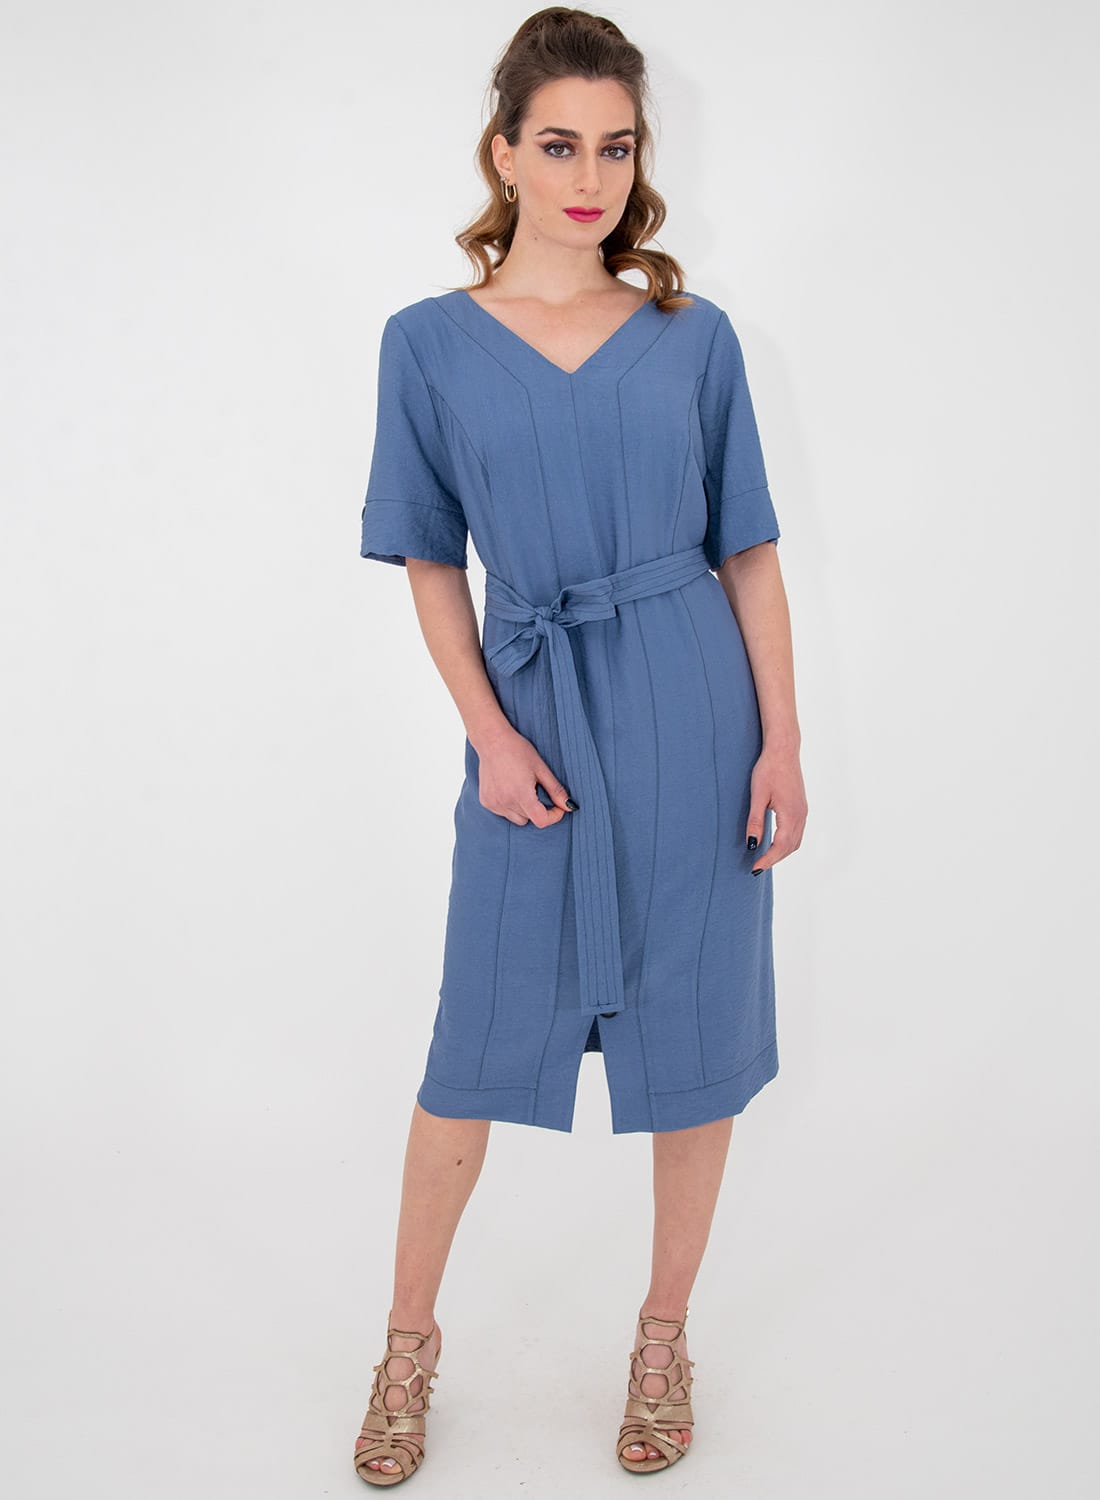 Μπλε ίσιο κολακευτικό φόρεμα με ζώνη